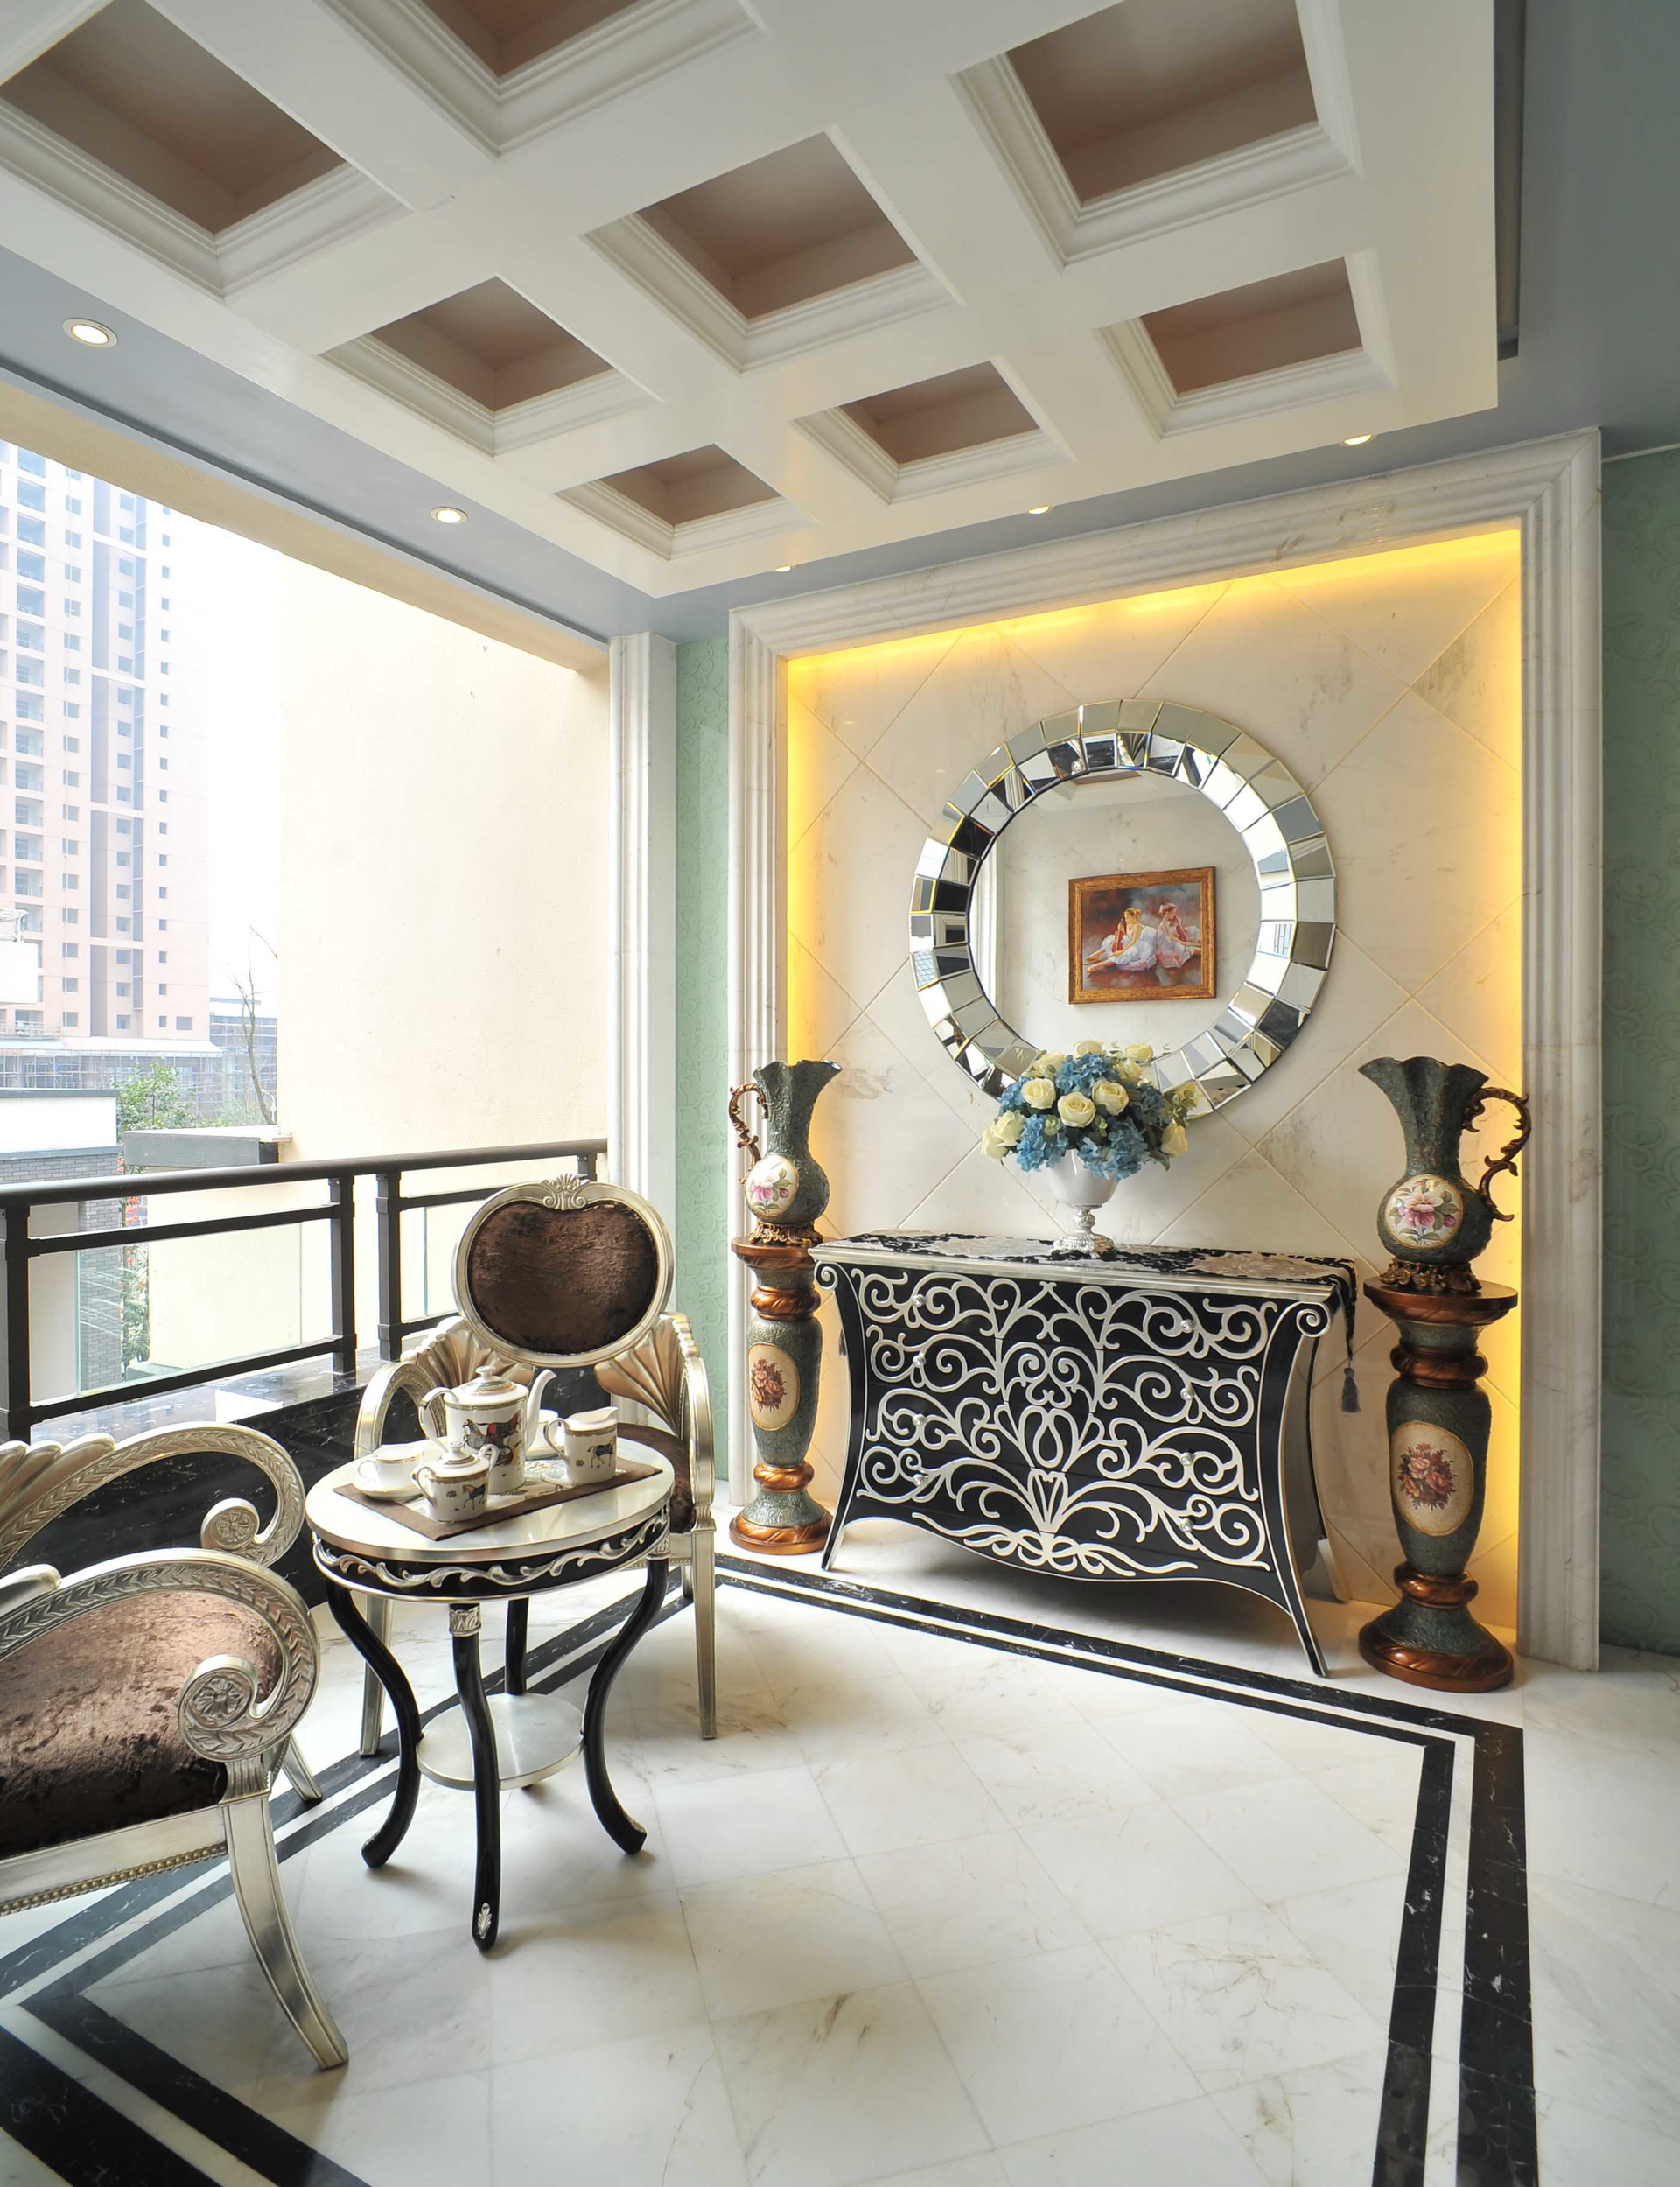 欧式 旧房改造 复式 LOFT 装修风格 客厅图片来自北京生活家装饰公司在160平 复式欧式风格装修的分享